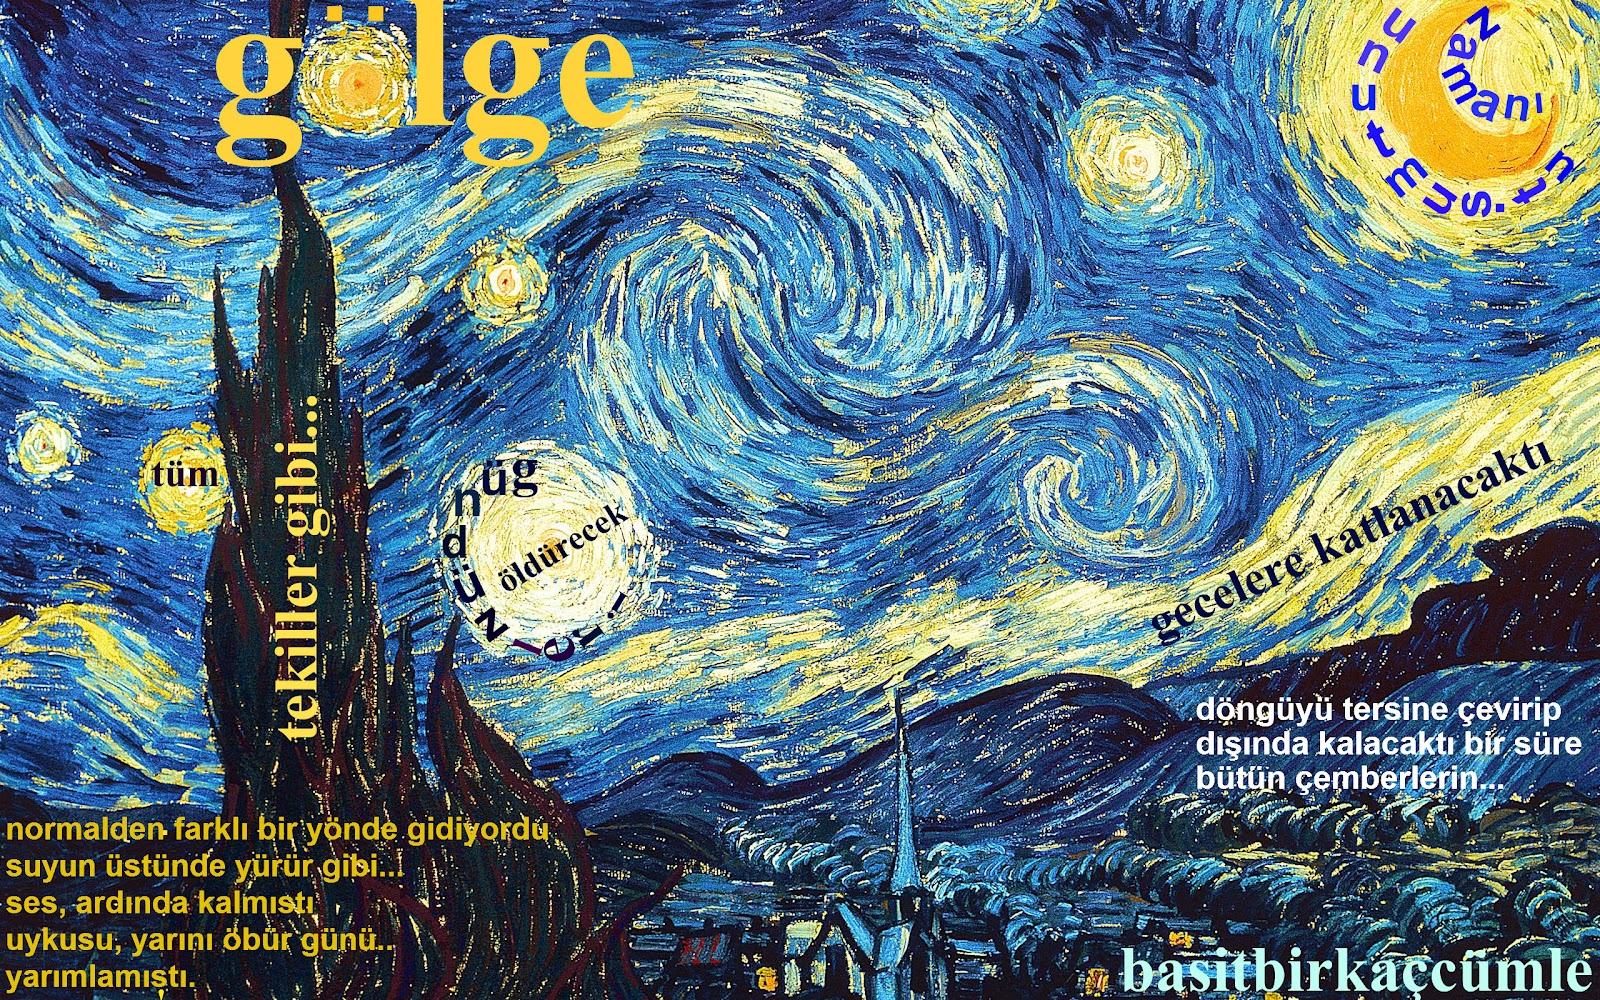 http://4.bp.blogspot.com/-ignnYJafE9Q/UGRhJ8URtPI/AAAAAAAAAGo/Bml-8B94a-o/s1600/191-Van-Gogh-Starry-Nights-1.jpg